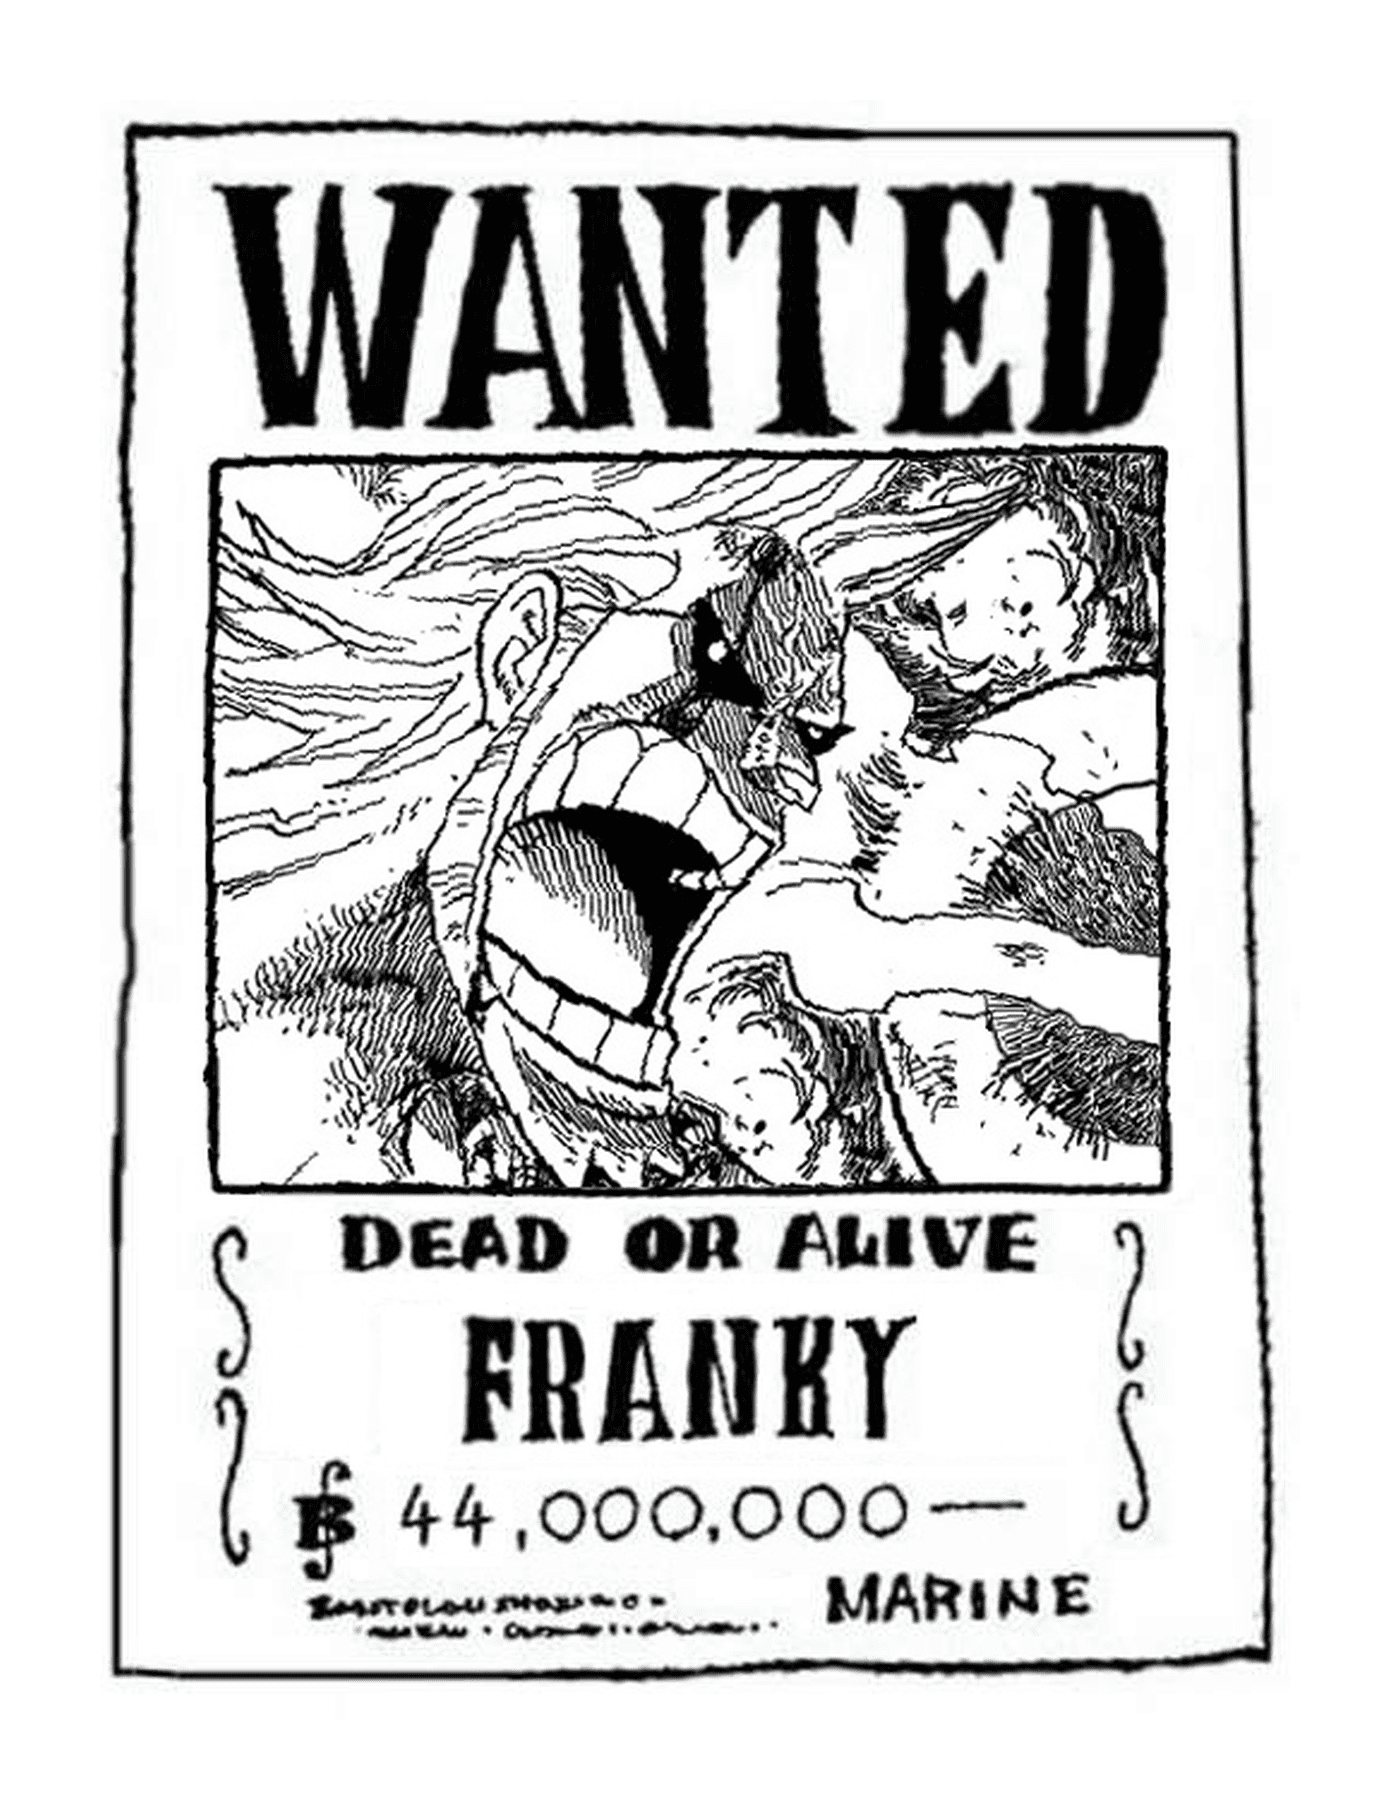  Franky gesucht, tot oder lebendig 